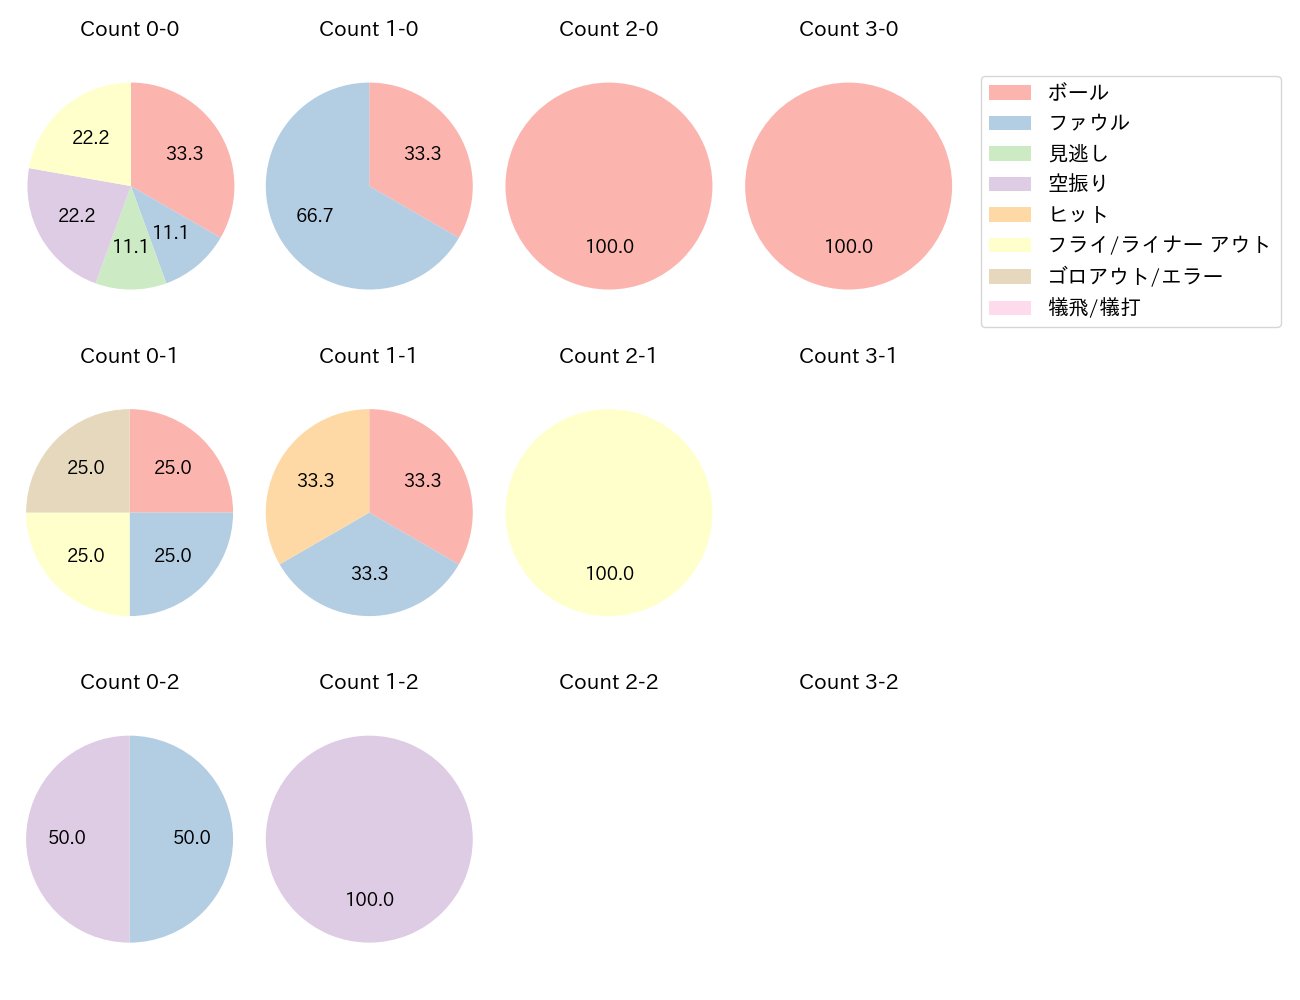 韮澤 雄也の球数分布(2023年4月)